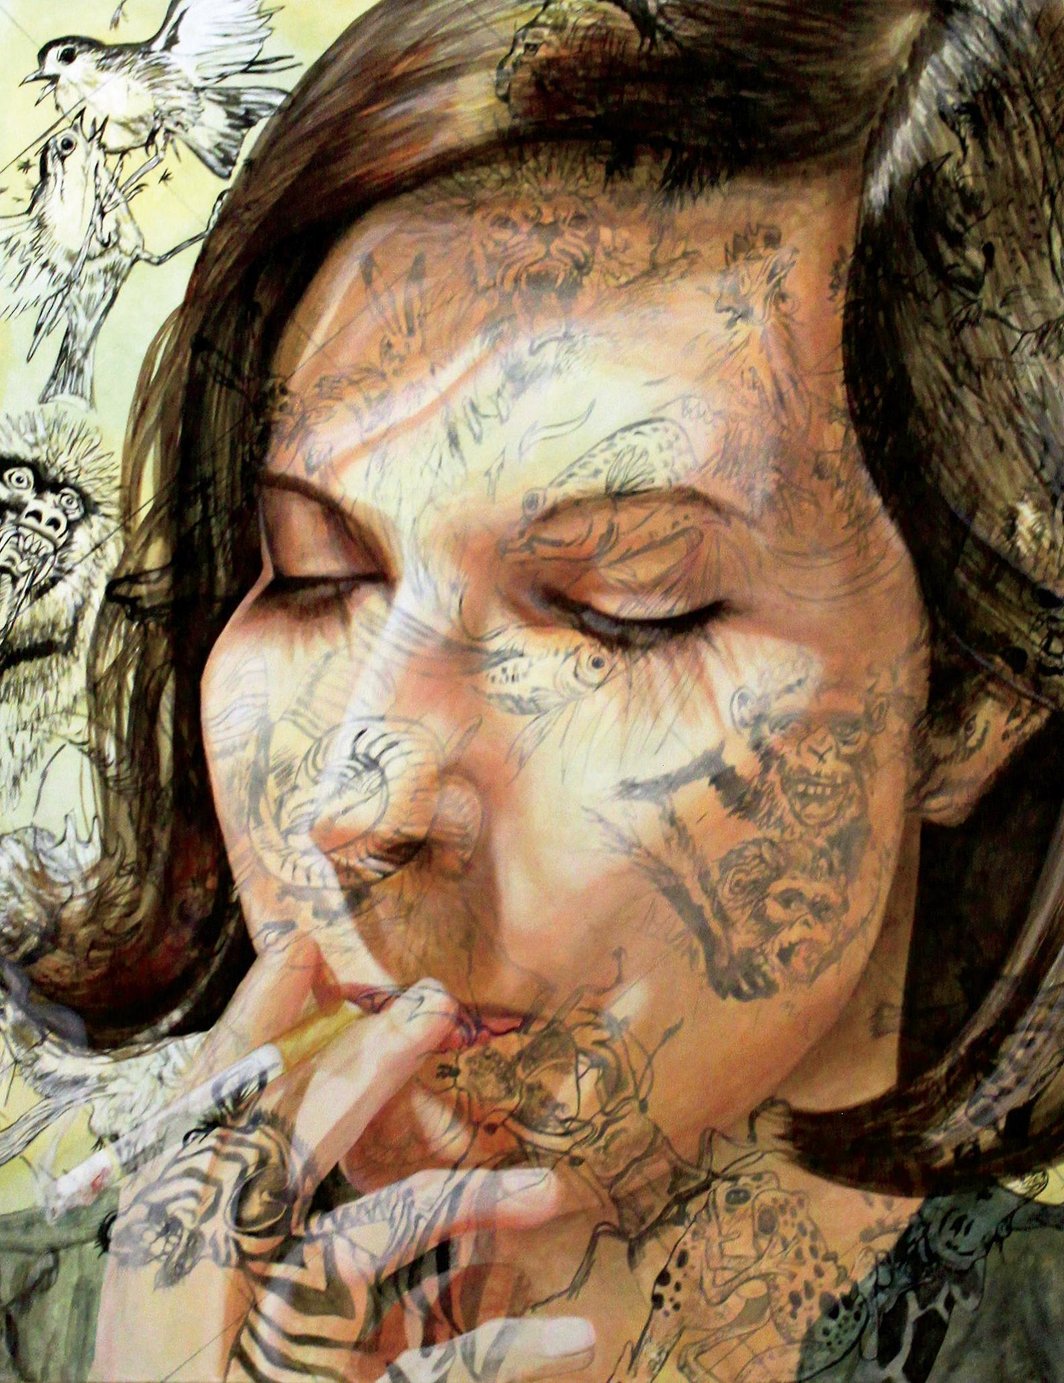 亚娜•尤勒、《过度描绘的无所不在的本能》、2012、亚麻油画、55 x 42".